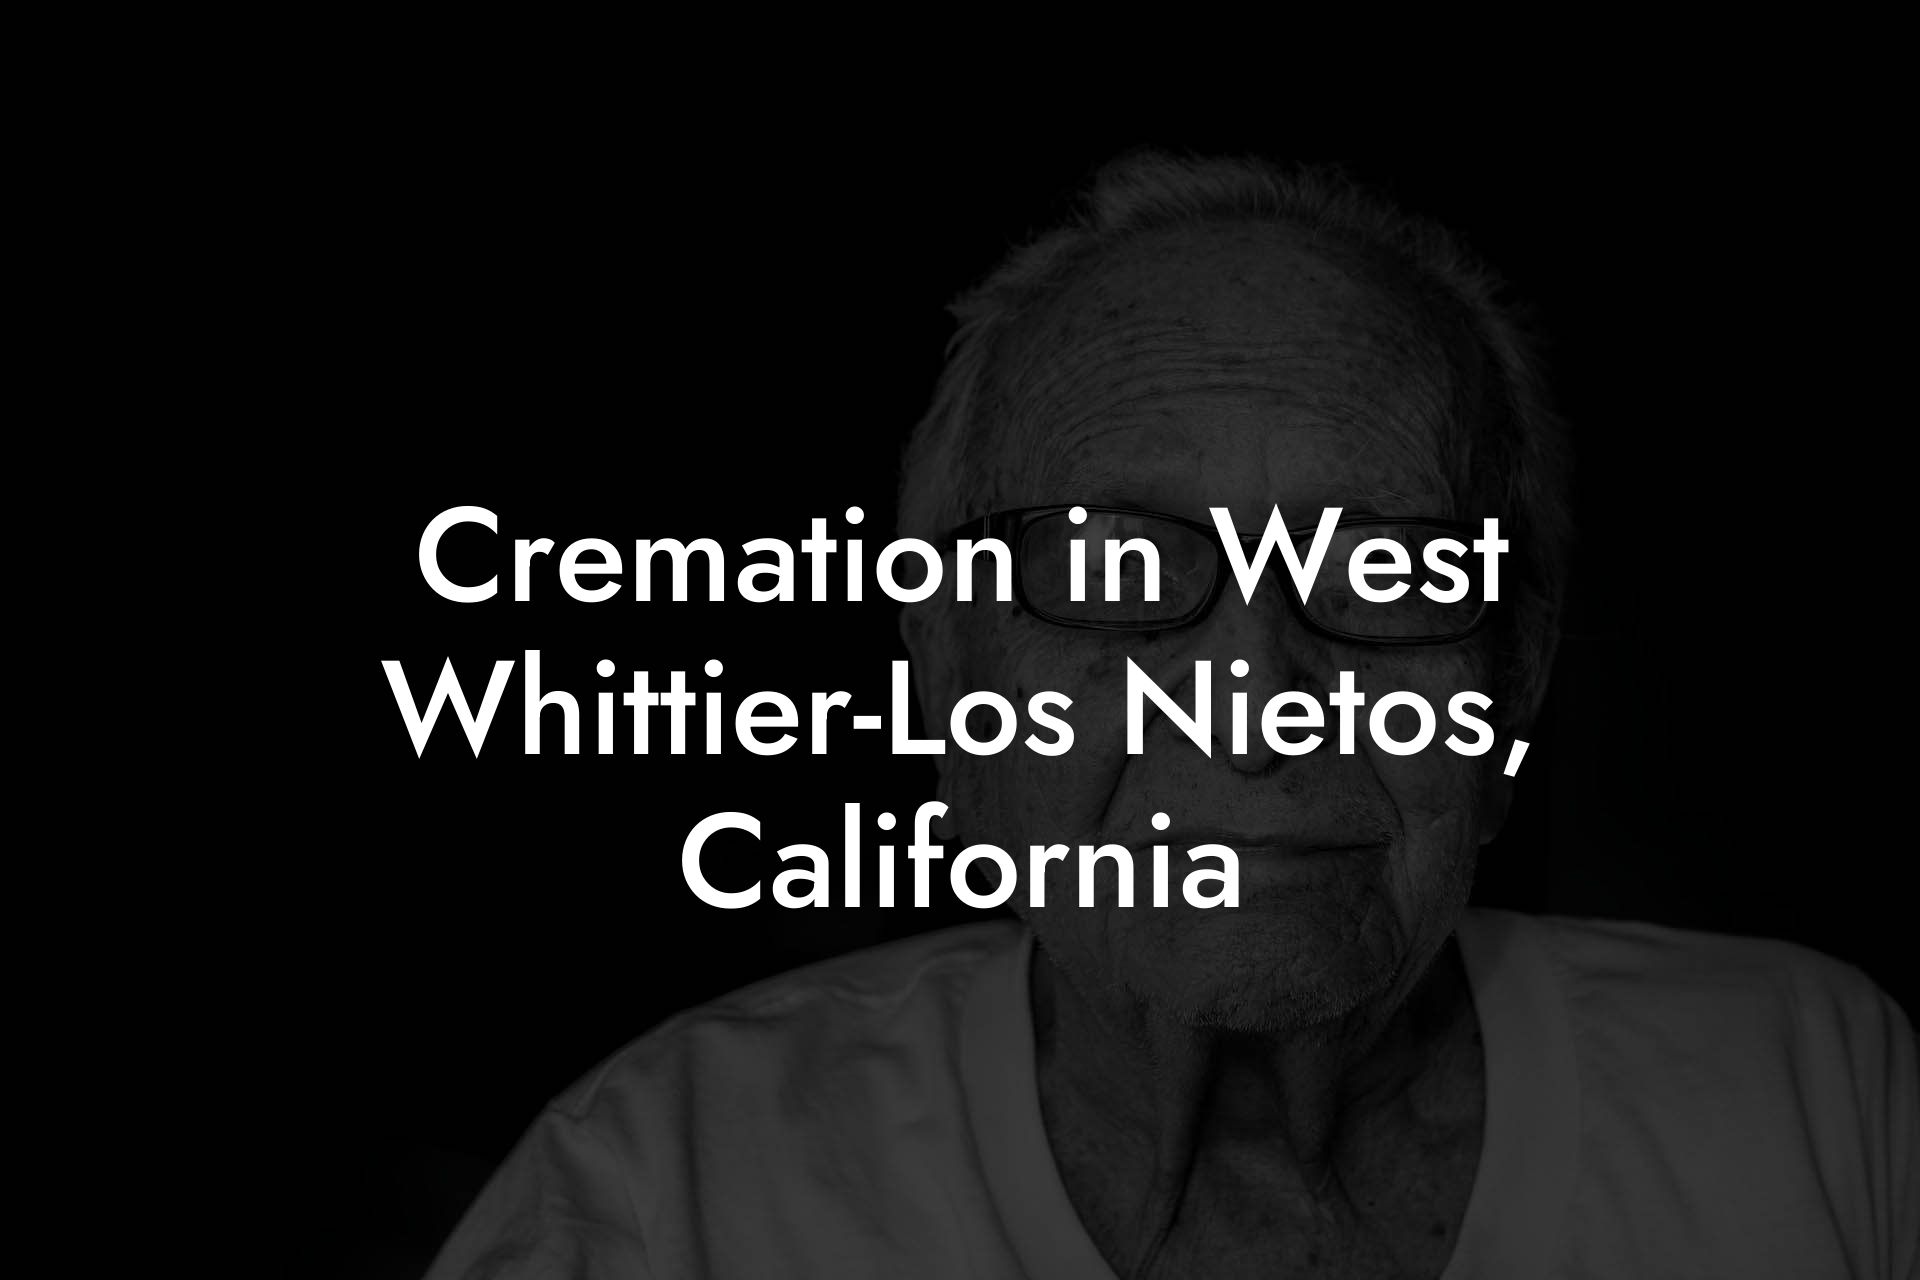 Cremation in West Whittier-Los Nietos, California